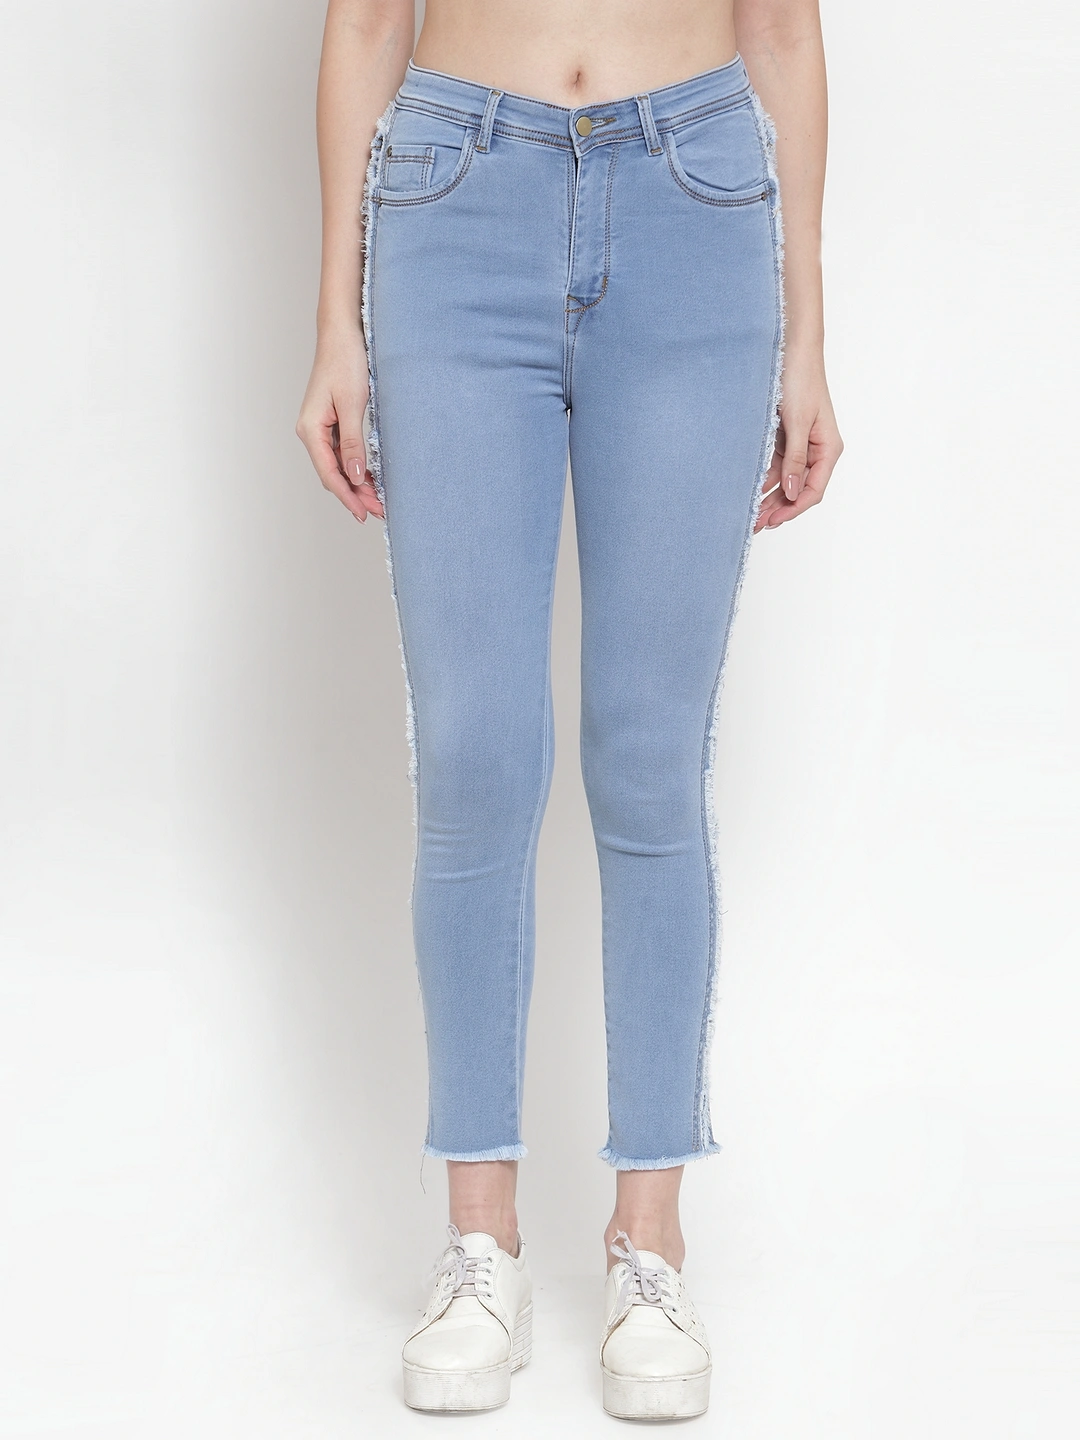 River of Design Ivana Side Frayed Skinny Jeans-32-Light Blue-1